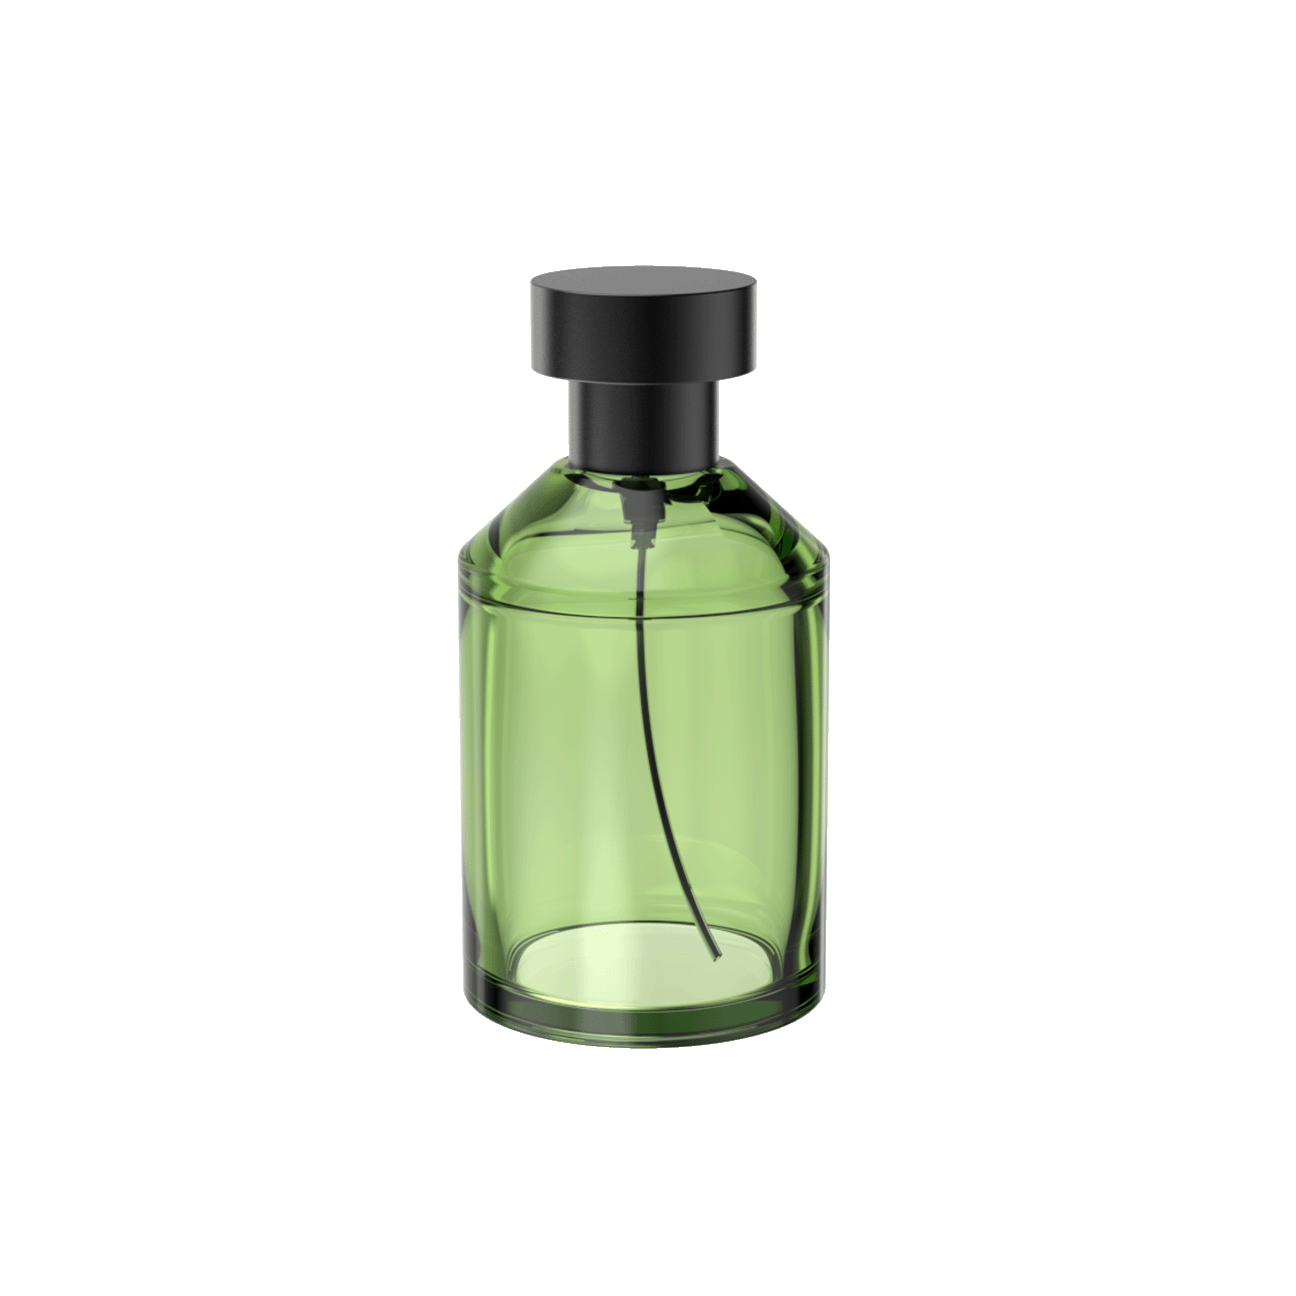 35 Eyecatching Perfume Bottle Designs